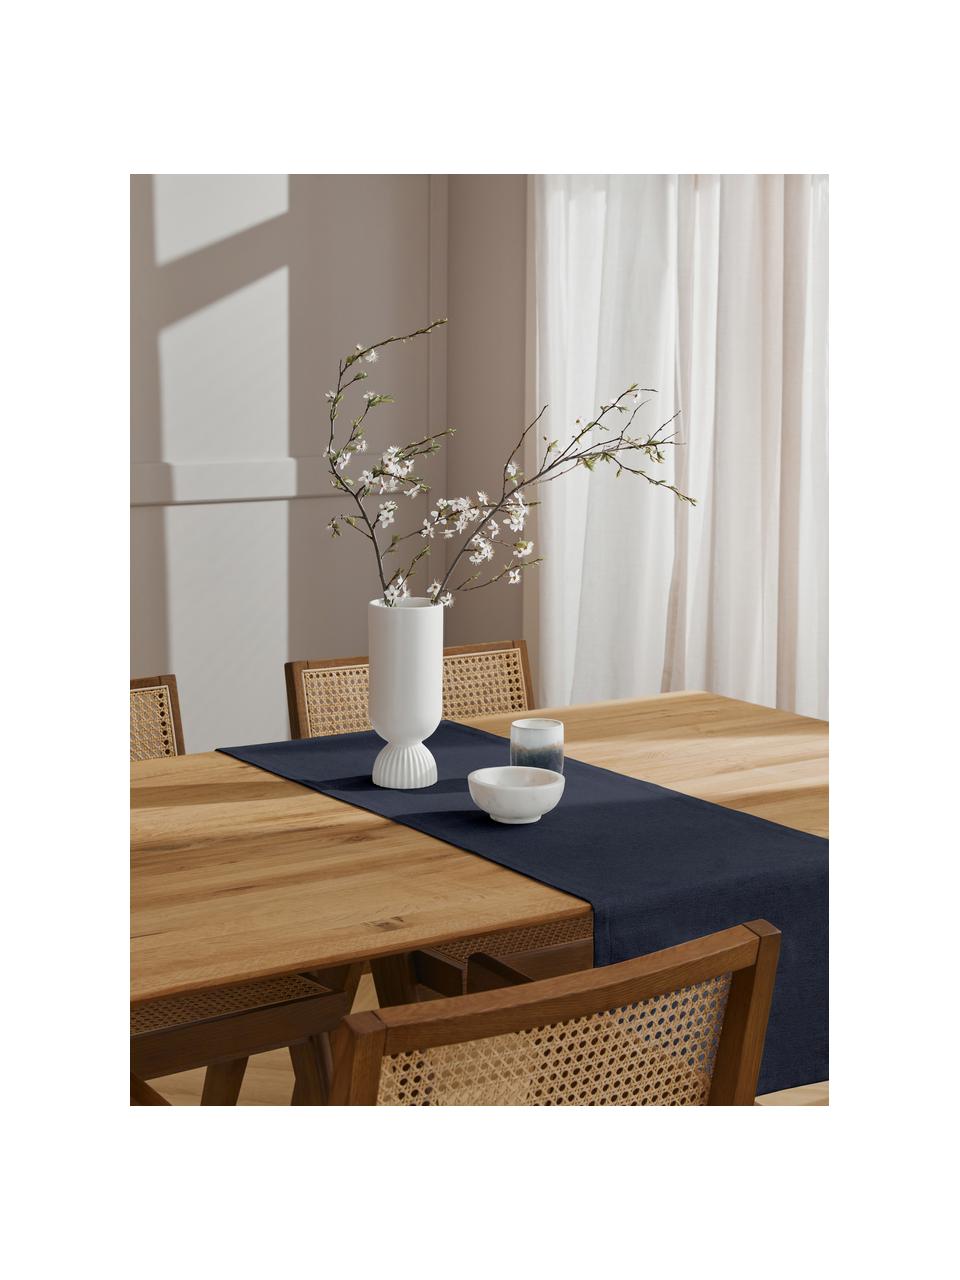 Tischläufer Riva aus Baumwollgemisch in Dunkelblau, 55% Baumwolle, 45% Polyester, Dunkelblau, B 40 x L 150 cm